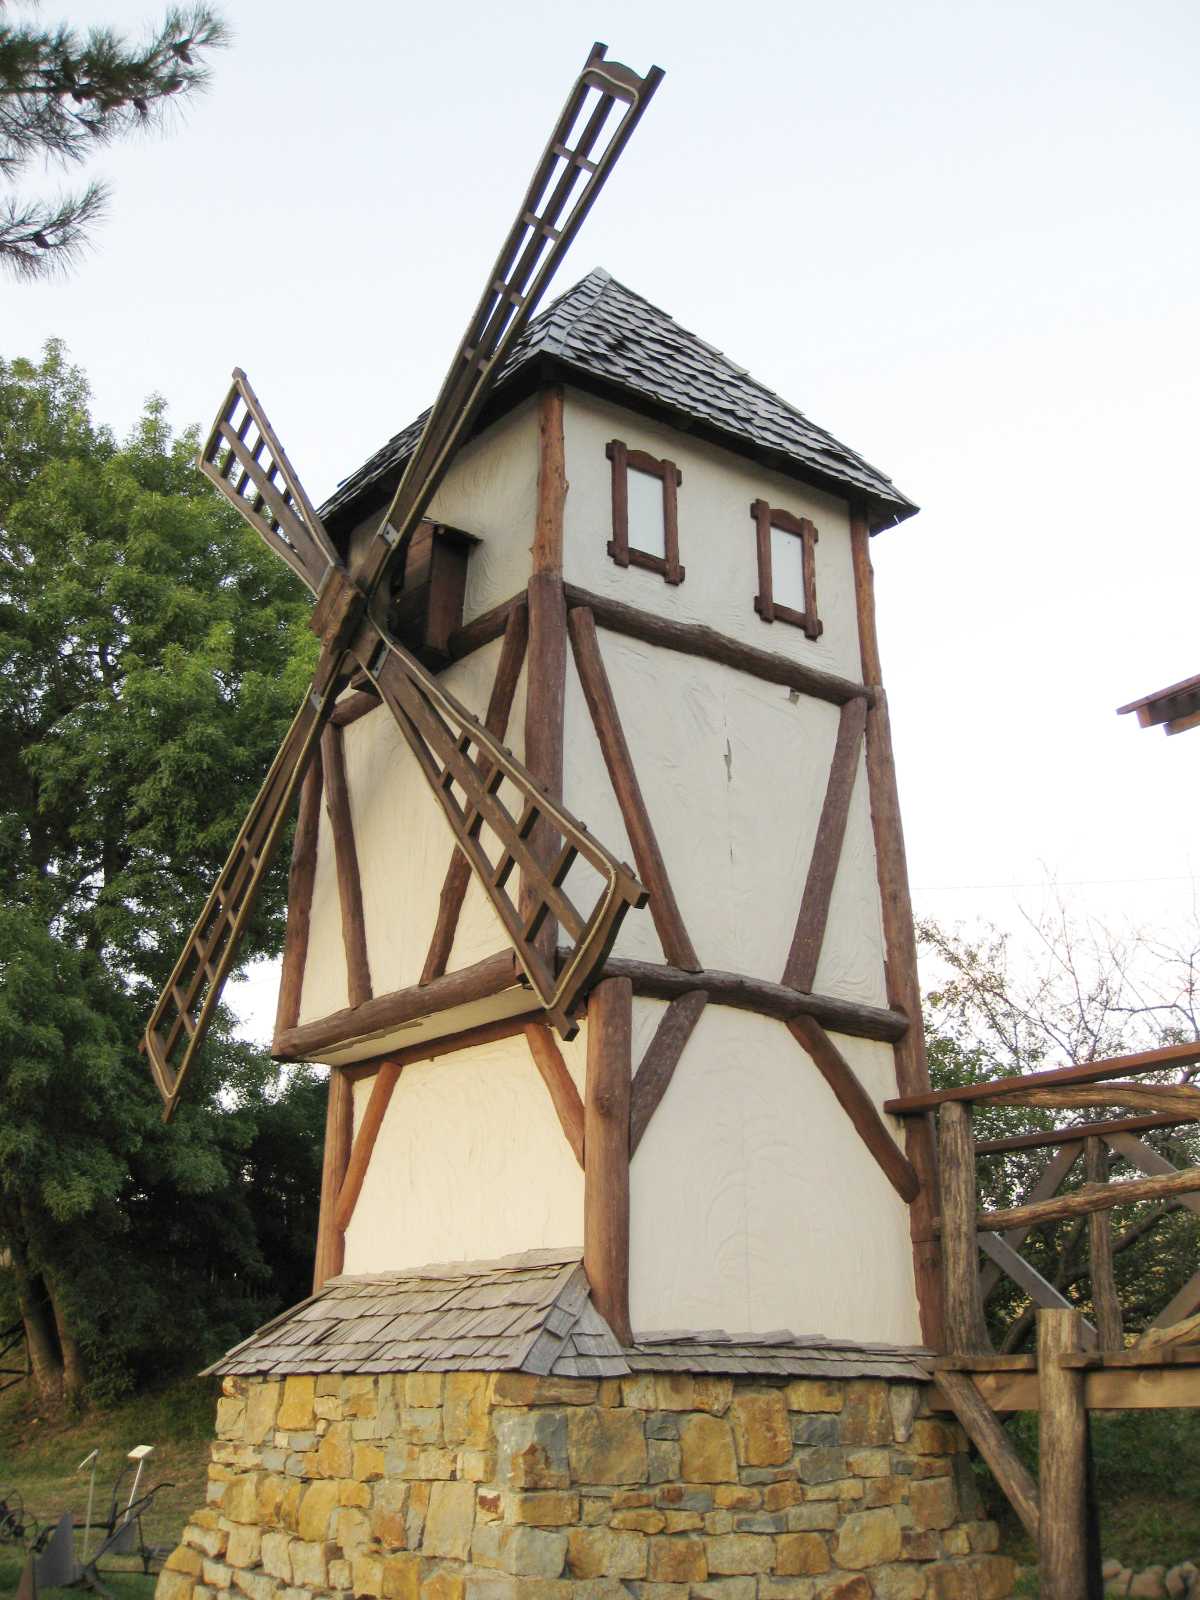 Мельница на участке в баварском стиле